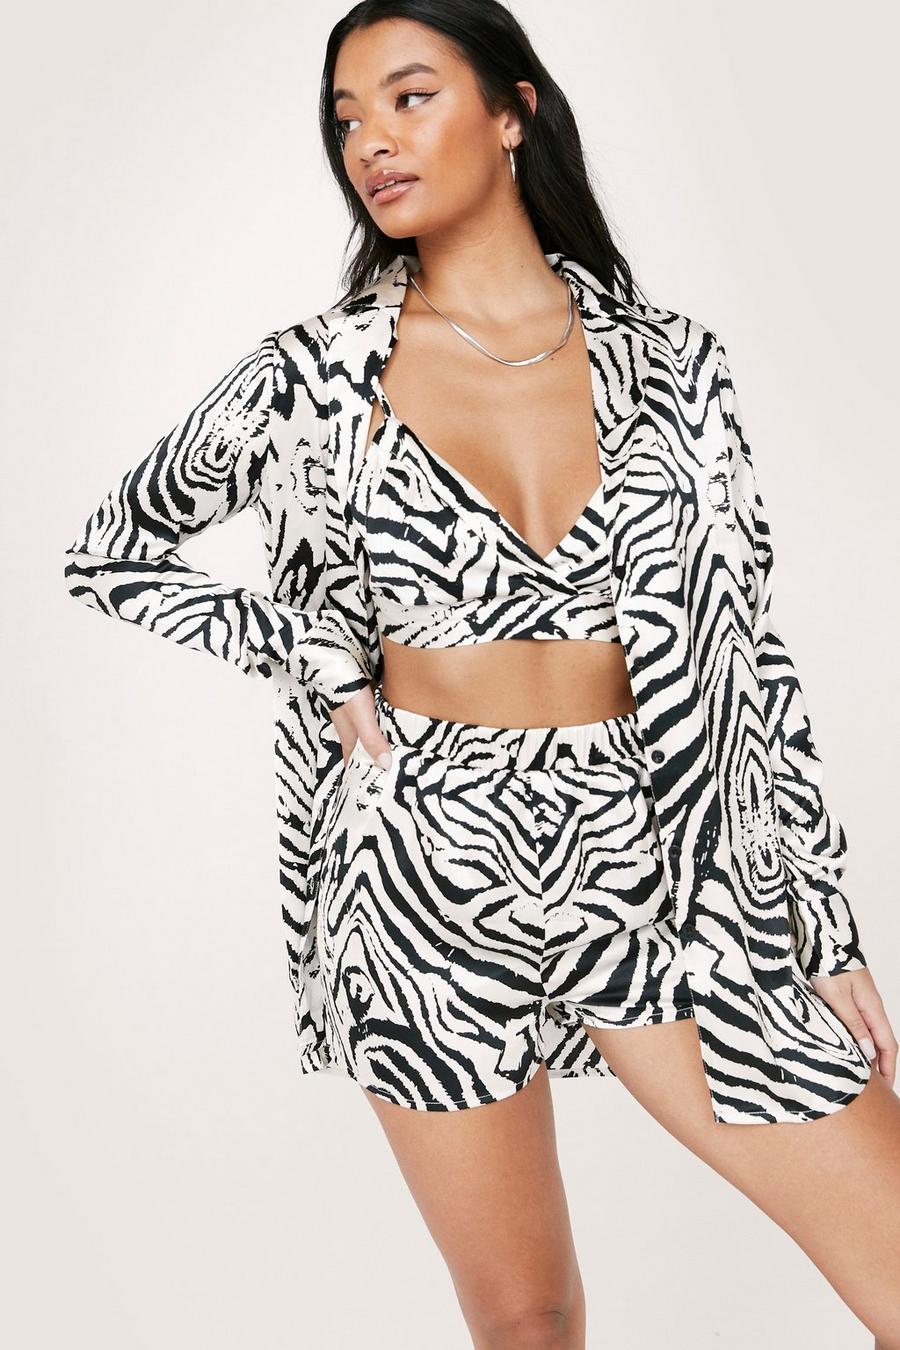 Satin Zebra Bralet Short Shirt 3-Pc Pajama Set